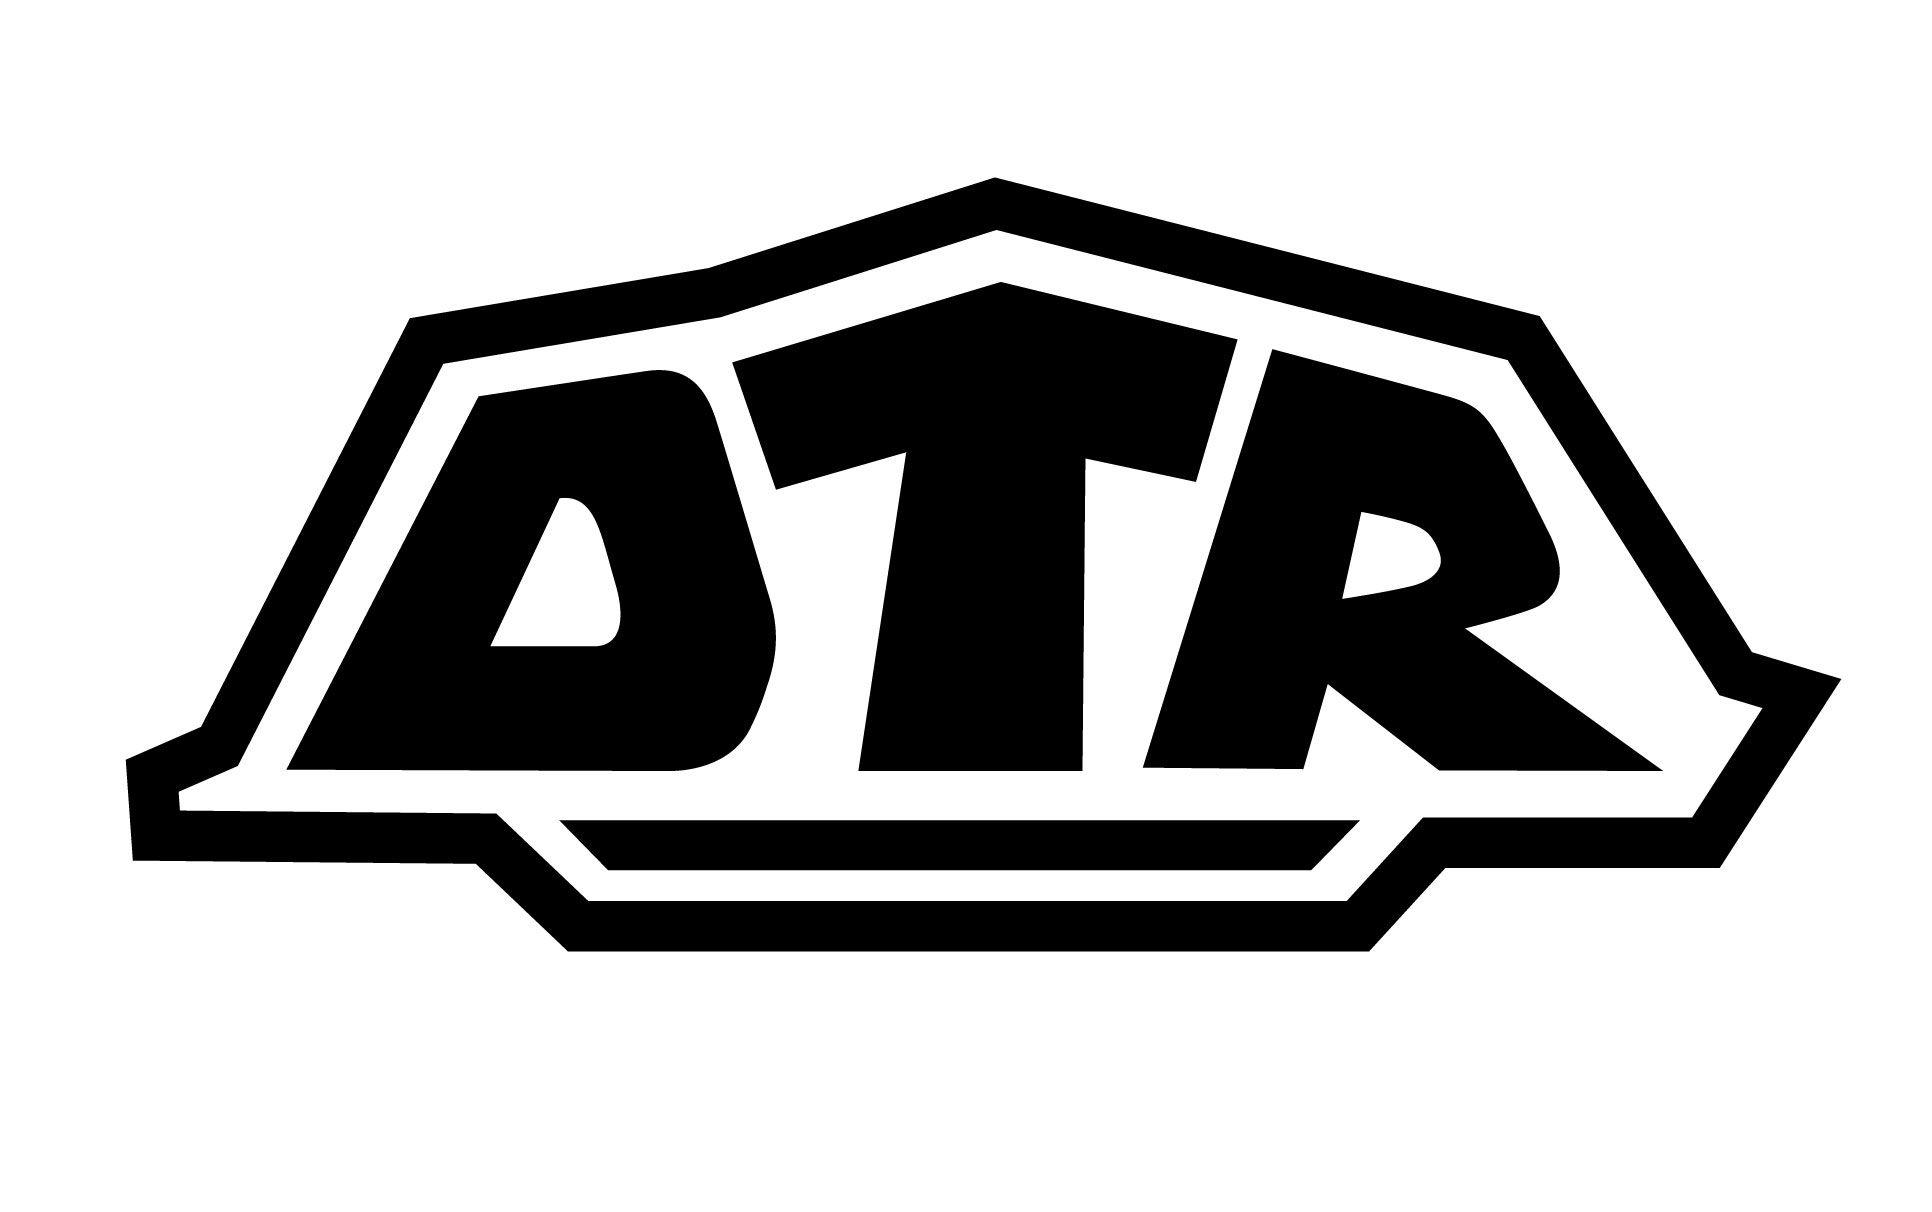 Google Main Logo - DTR Main Logo Released